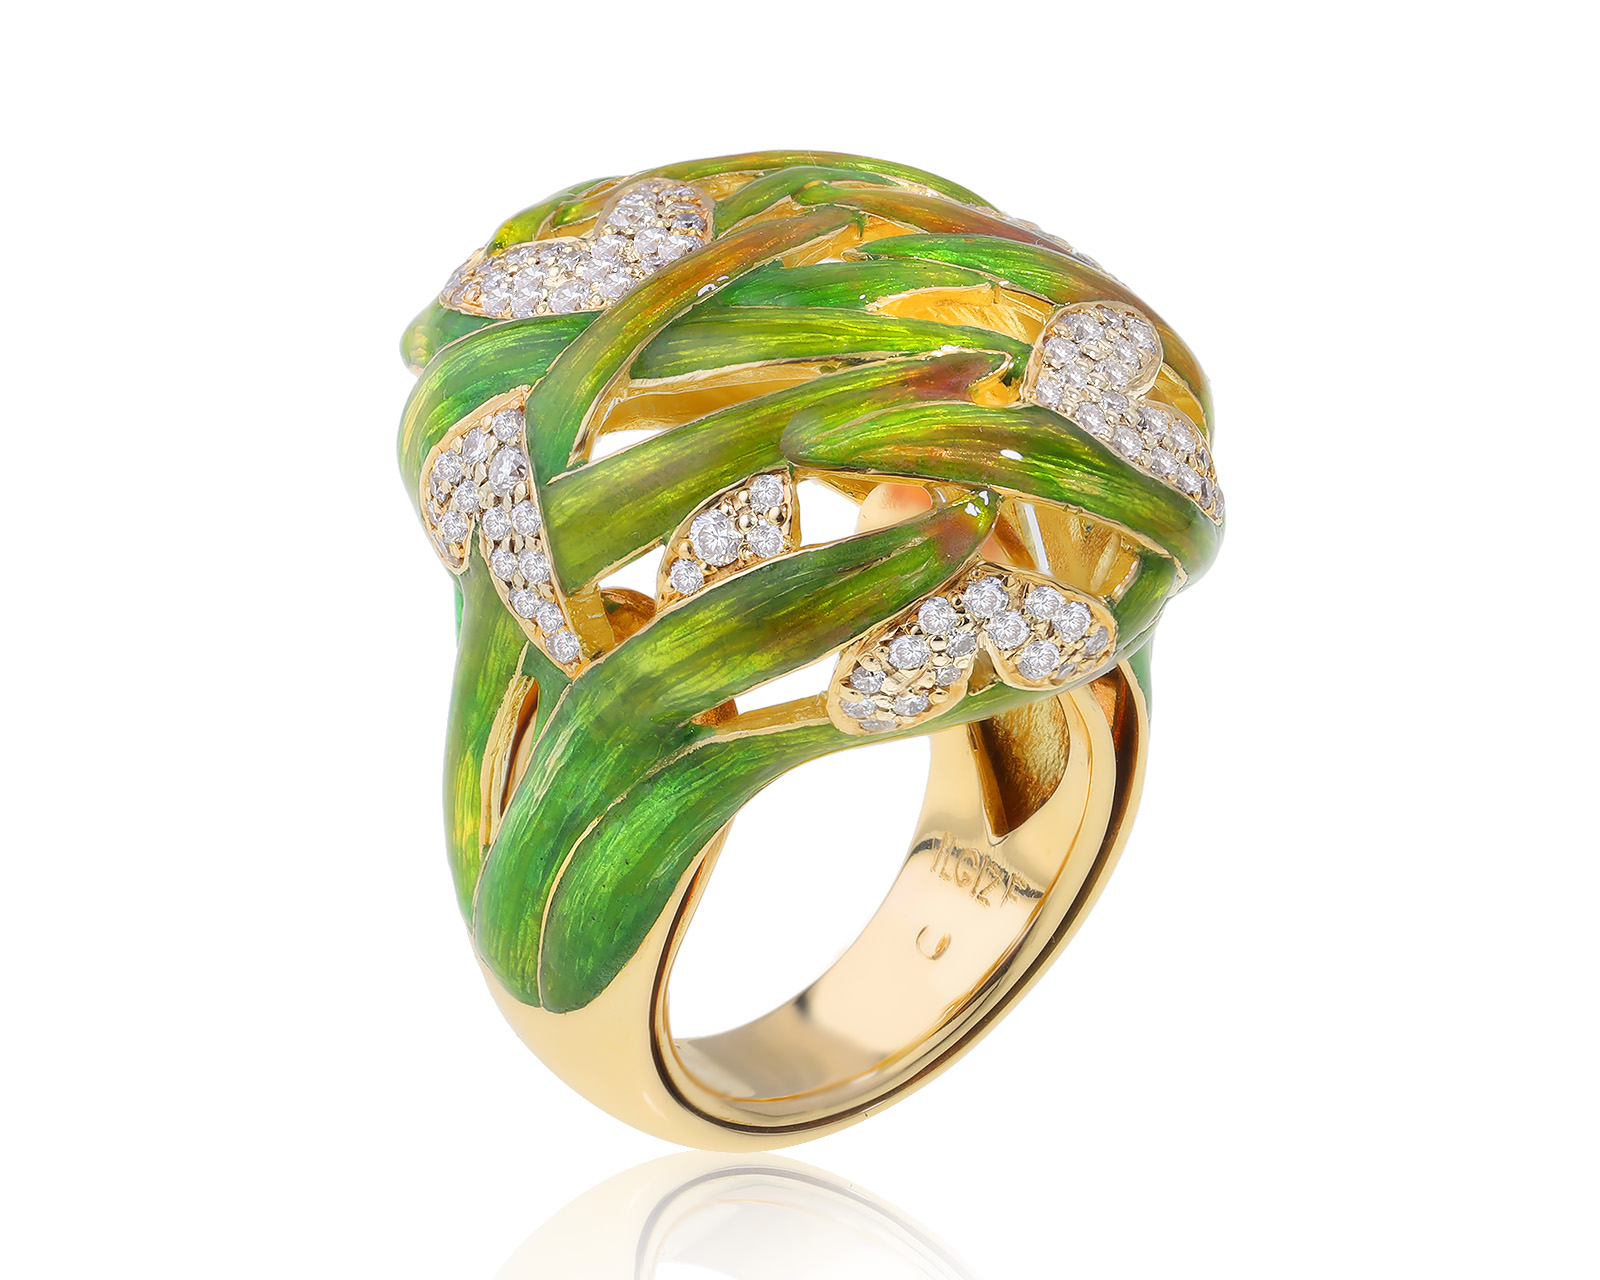 Оригинальное золотое кольцо с эмалью Ilgiz F 100424/7